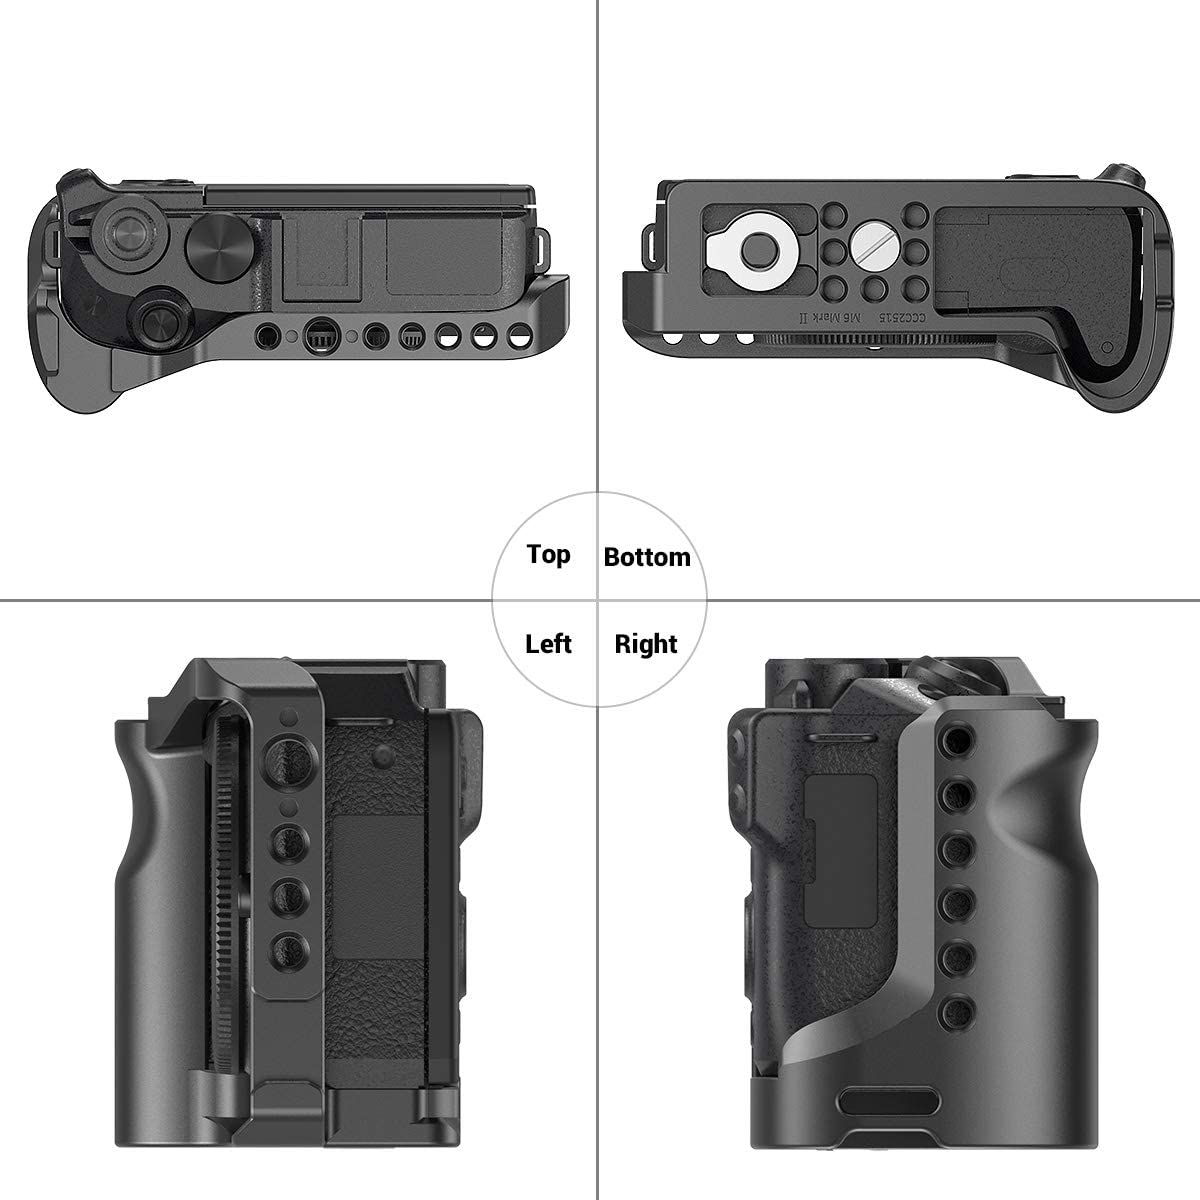 Comfortable Handle Grip SmallRig Camera Cage Rig for Canon EOS M6 Mark II